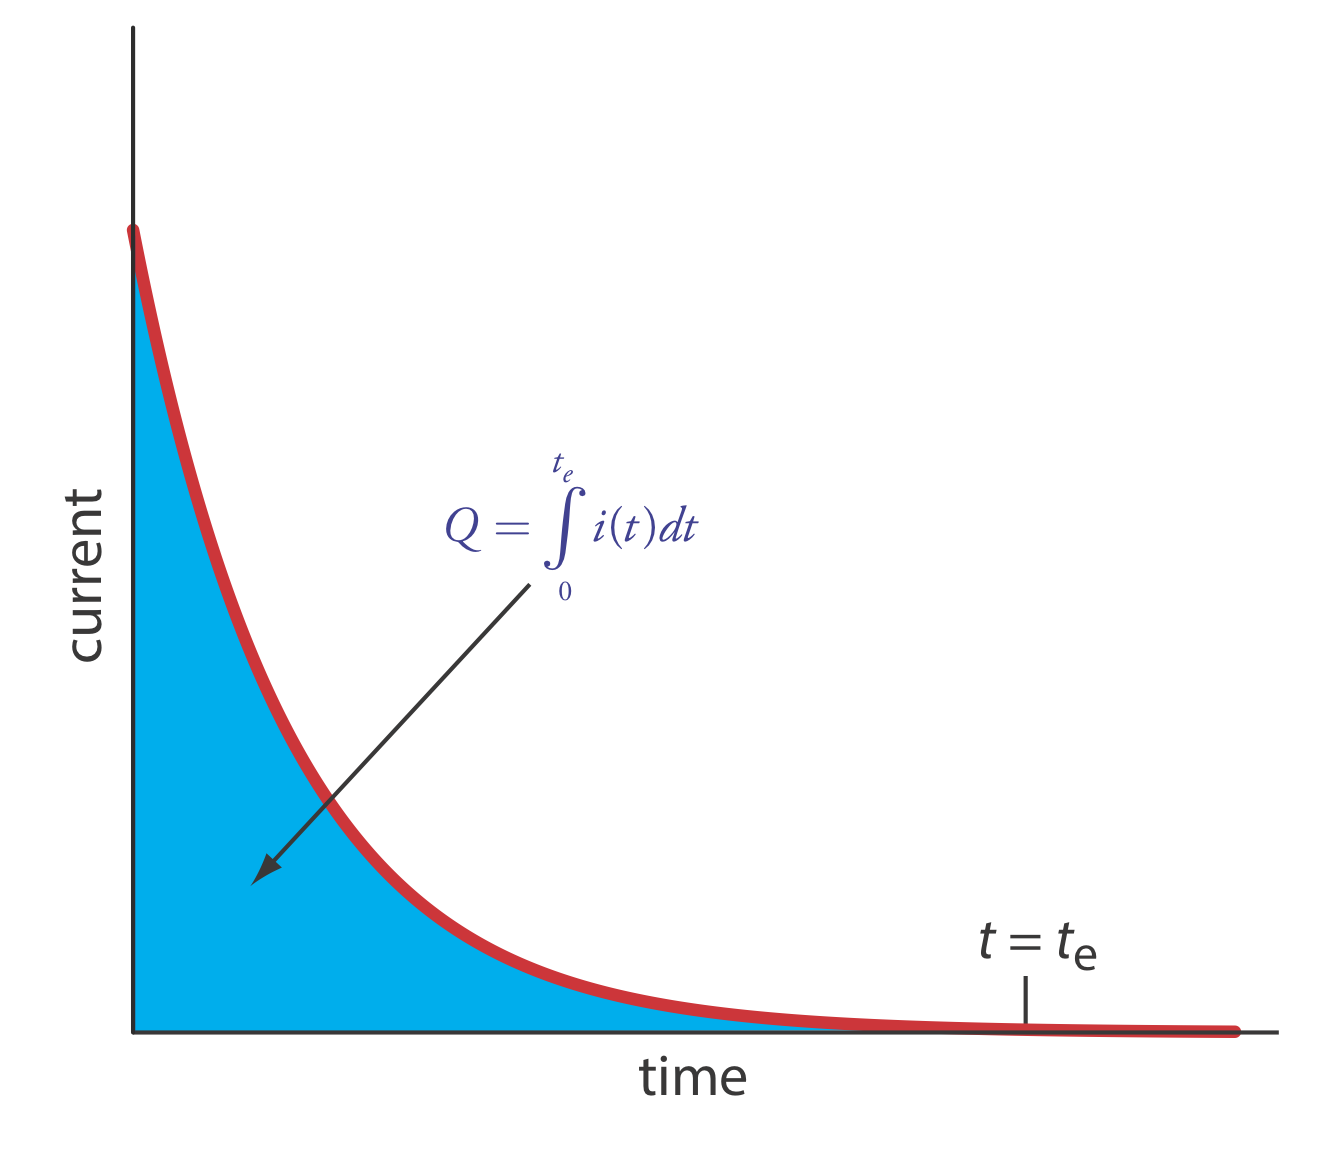 La gráfica de corriente en el eje y y tiempo en el eje x muestra una disminución en la corriente a medida que pasa el tiempo. En el tiempo t=t (e), la carga es cero.